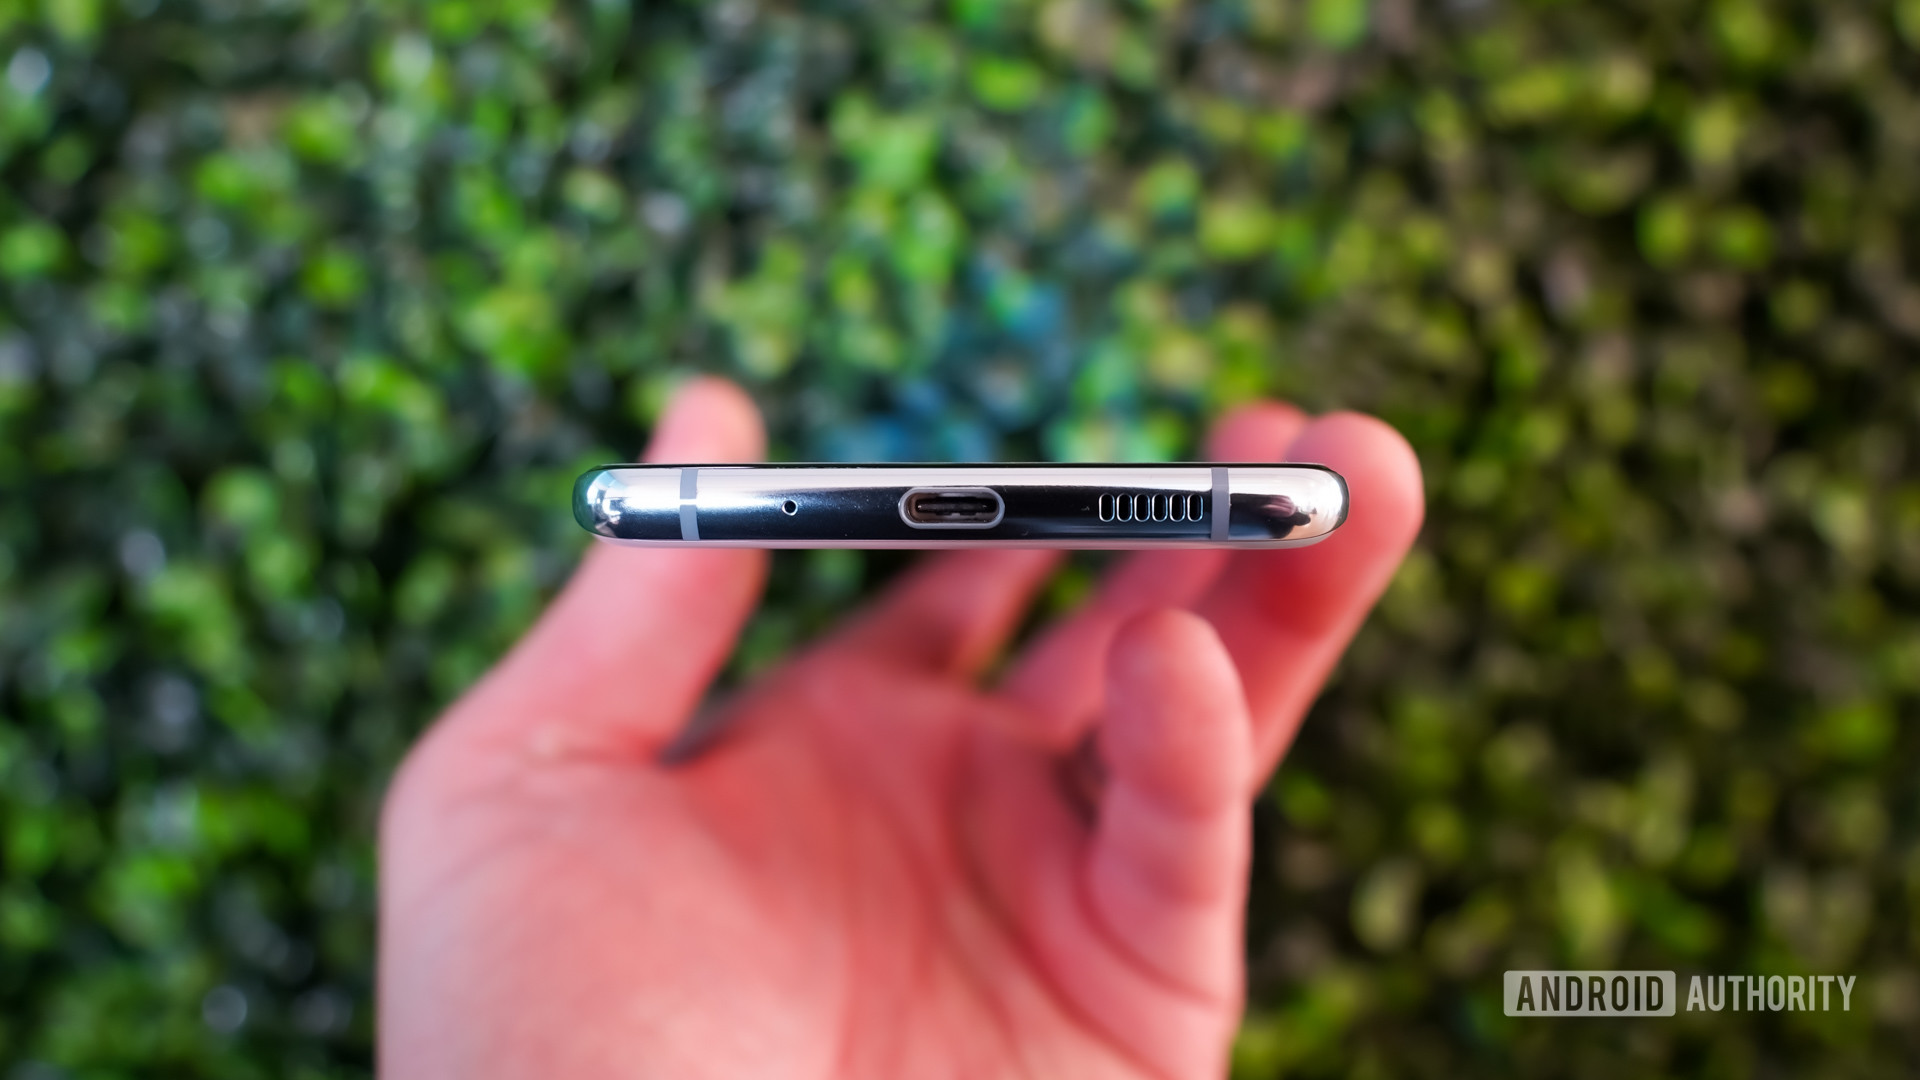 Телефоны Samsung Galaxy S20 первыми получили новую сертификацию быстрой зарядки USB